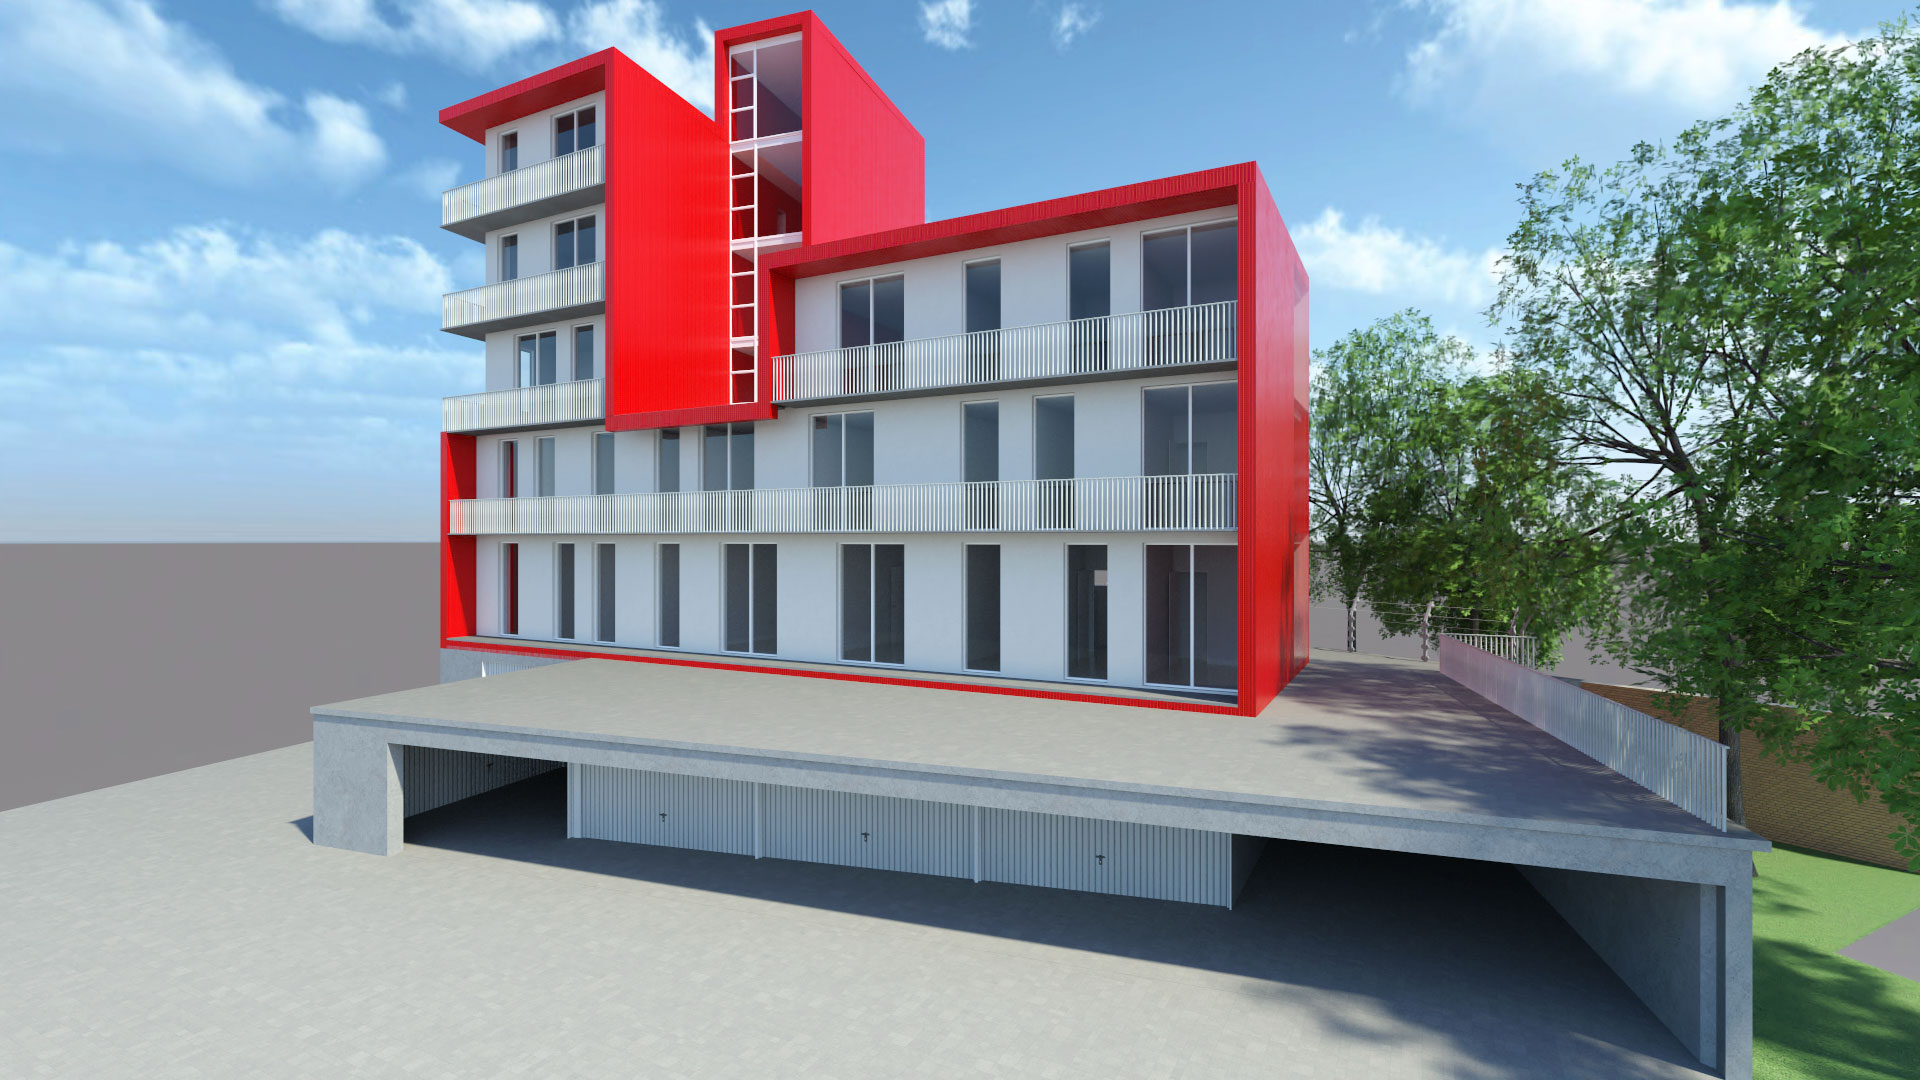 Red Building Residence slider02.jpg